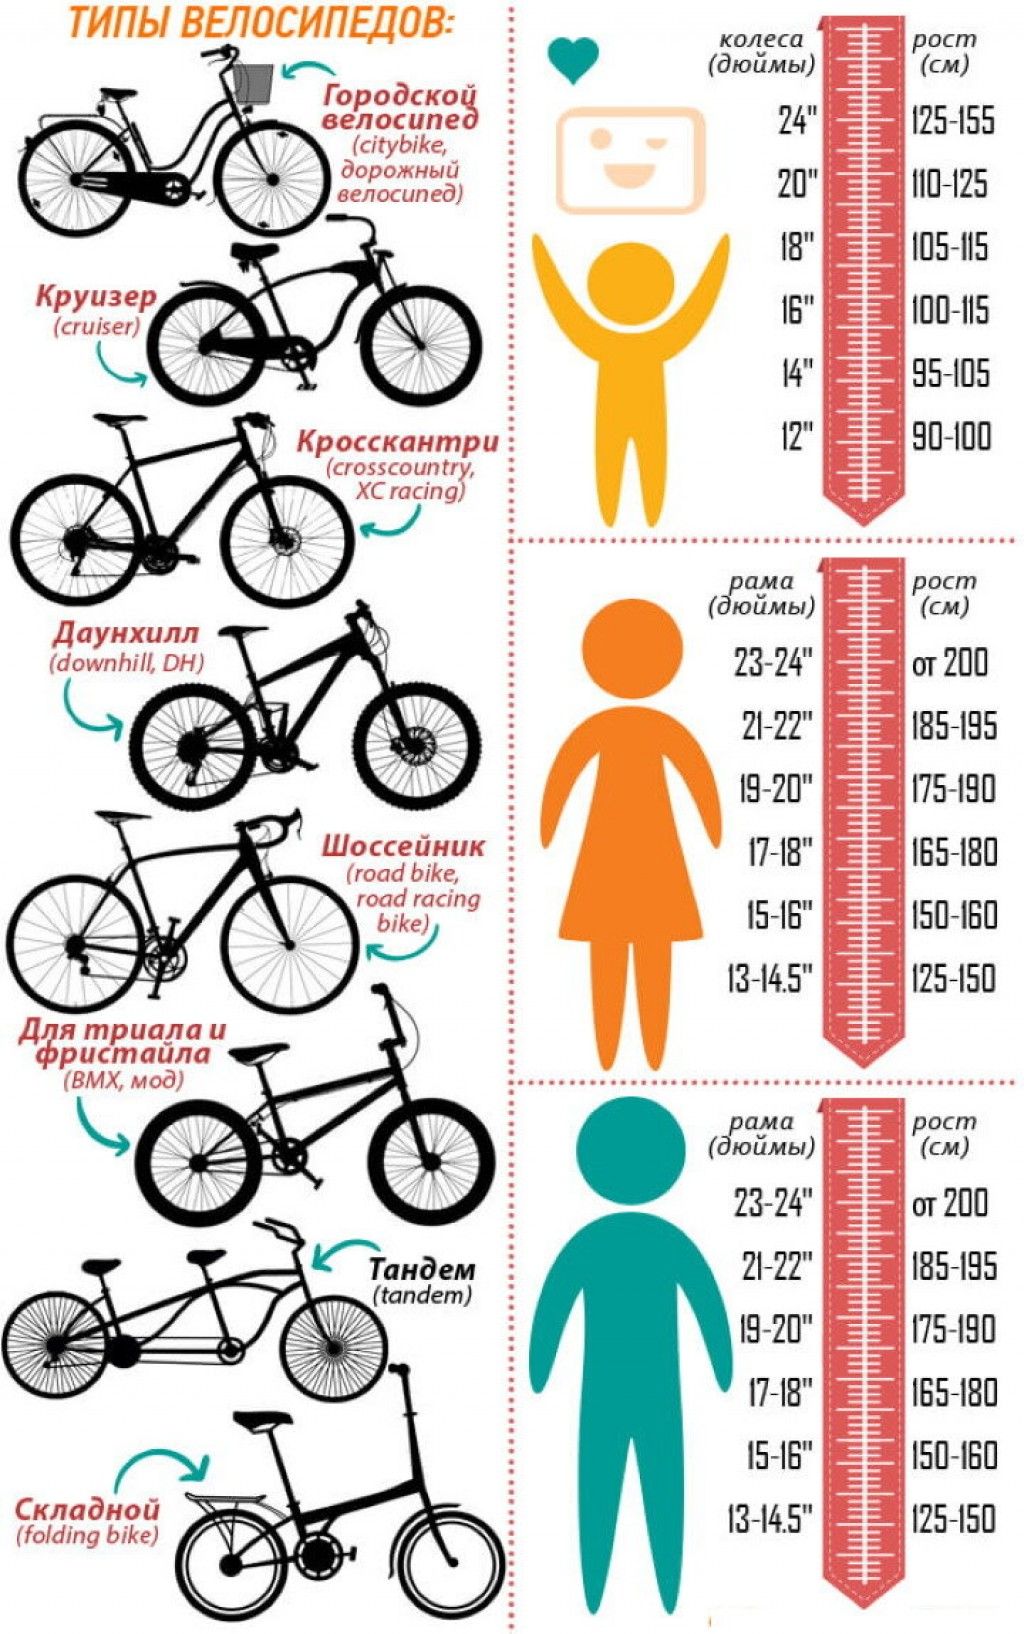 Рост 13 велосипед. Как подобрать размер рамы велосипеда по росту ребенка. Как выбрать размер рамы велосипеда по росту ребенка. Размер рамы и колес велосипеда по росту таблица для детей. Размер рамы у велосипеда с 26 колесами.